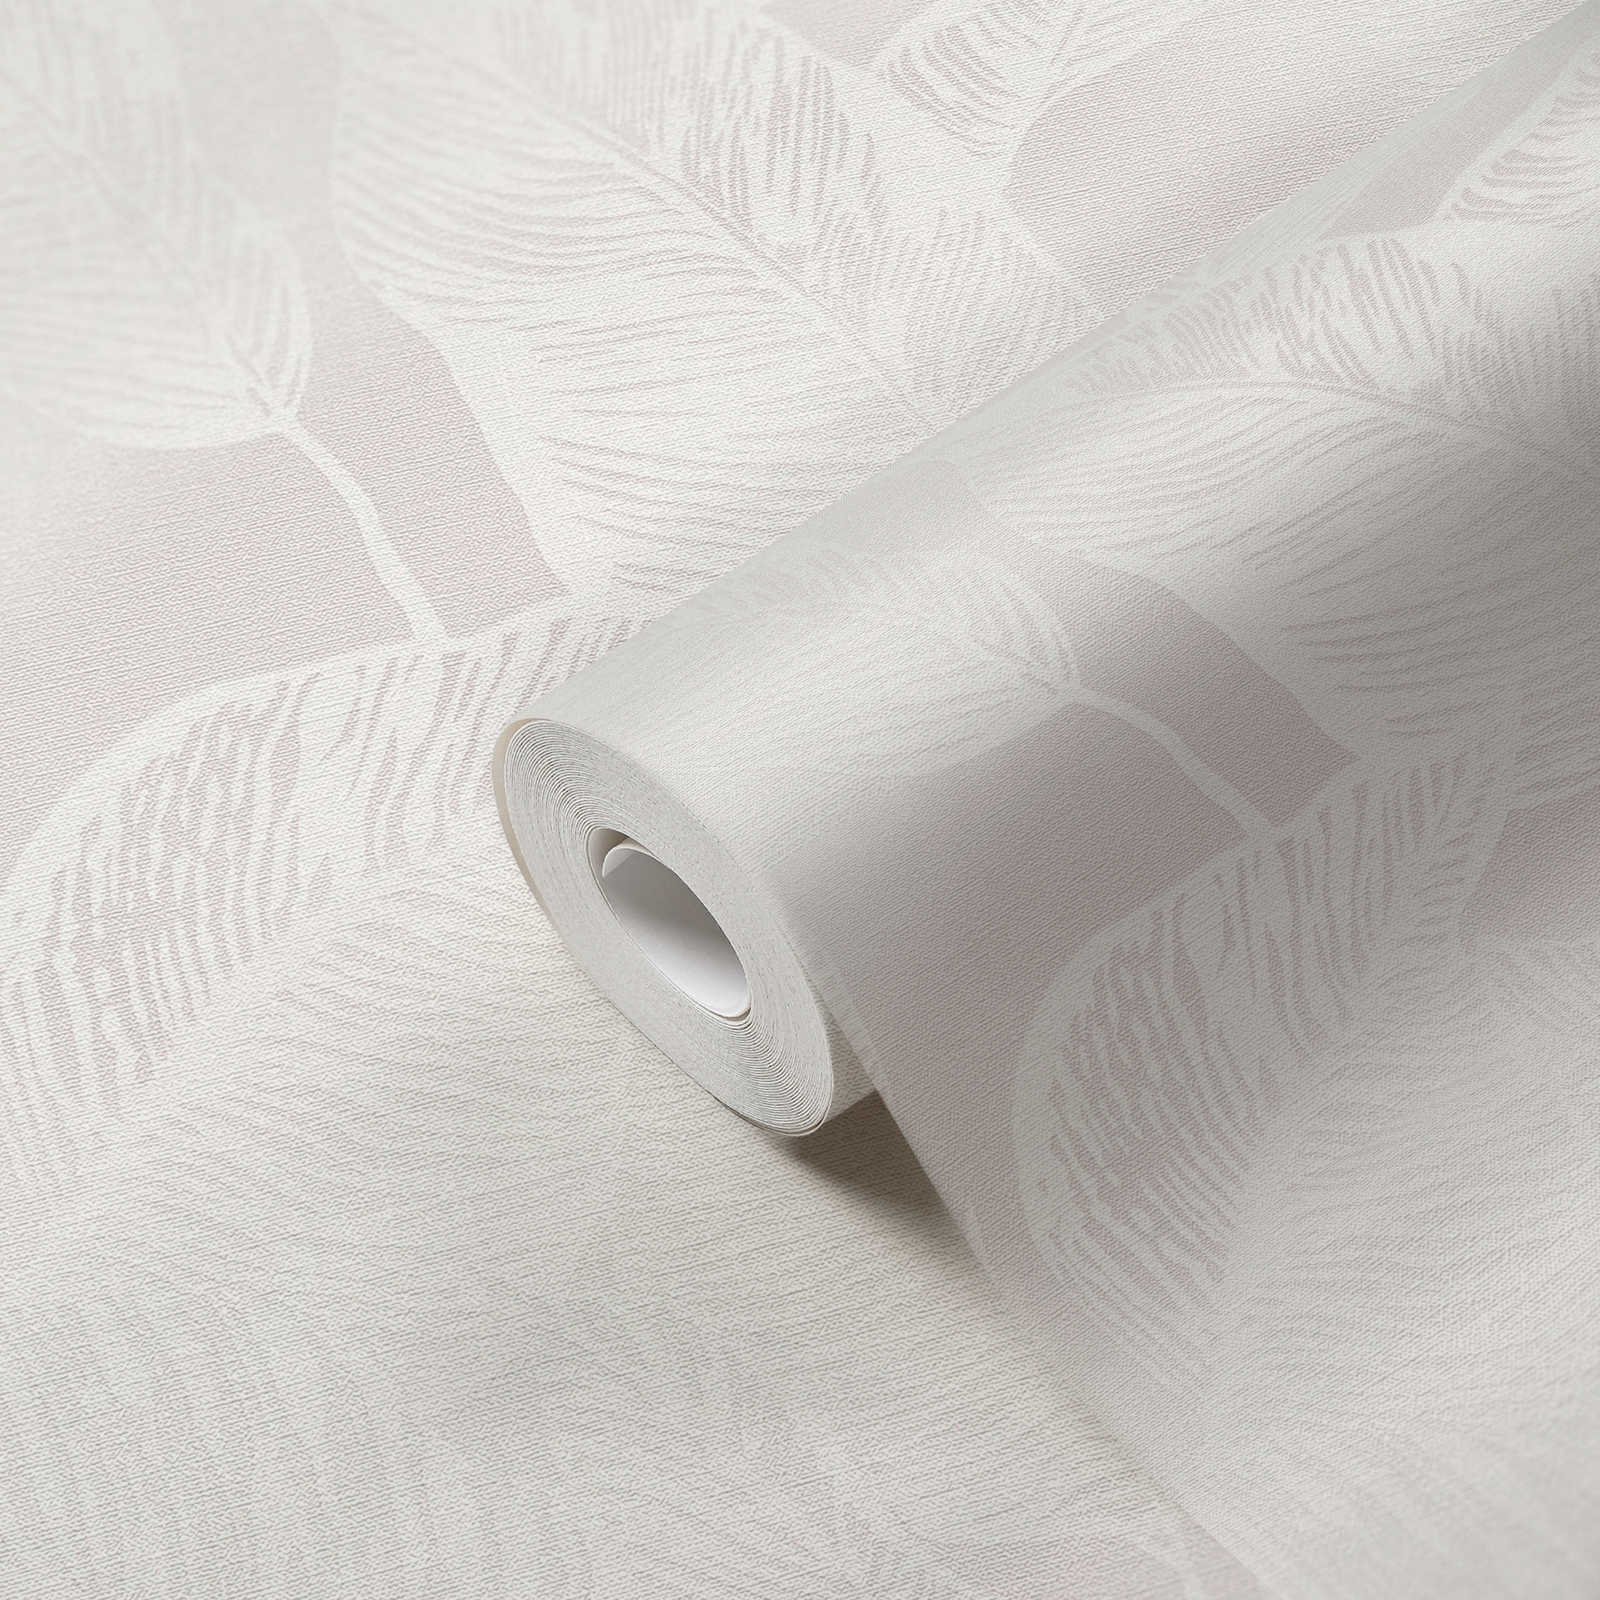             Papel pintado no tejido con hojas sin PVC - blanco, gris
        